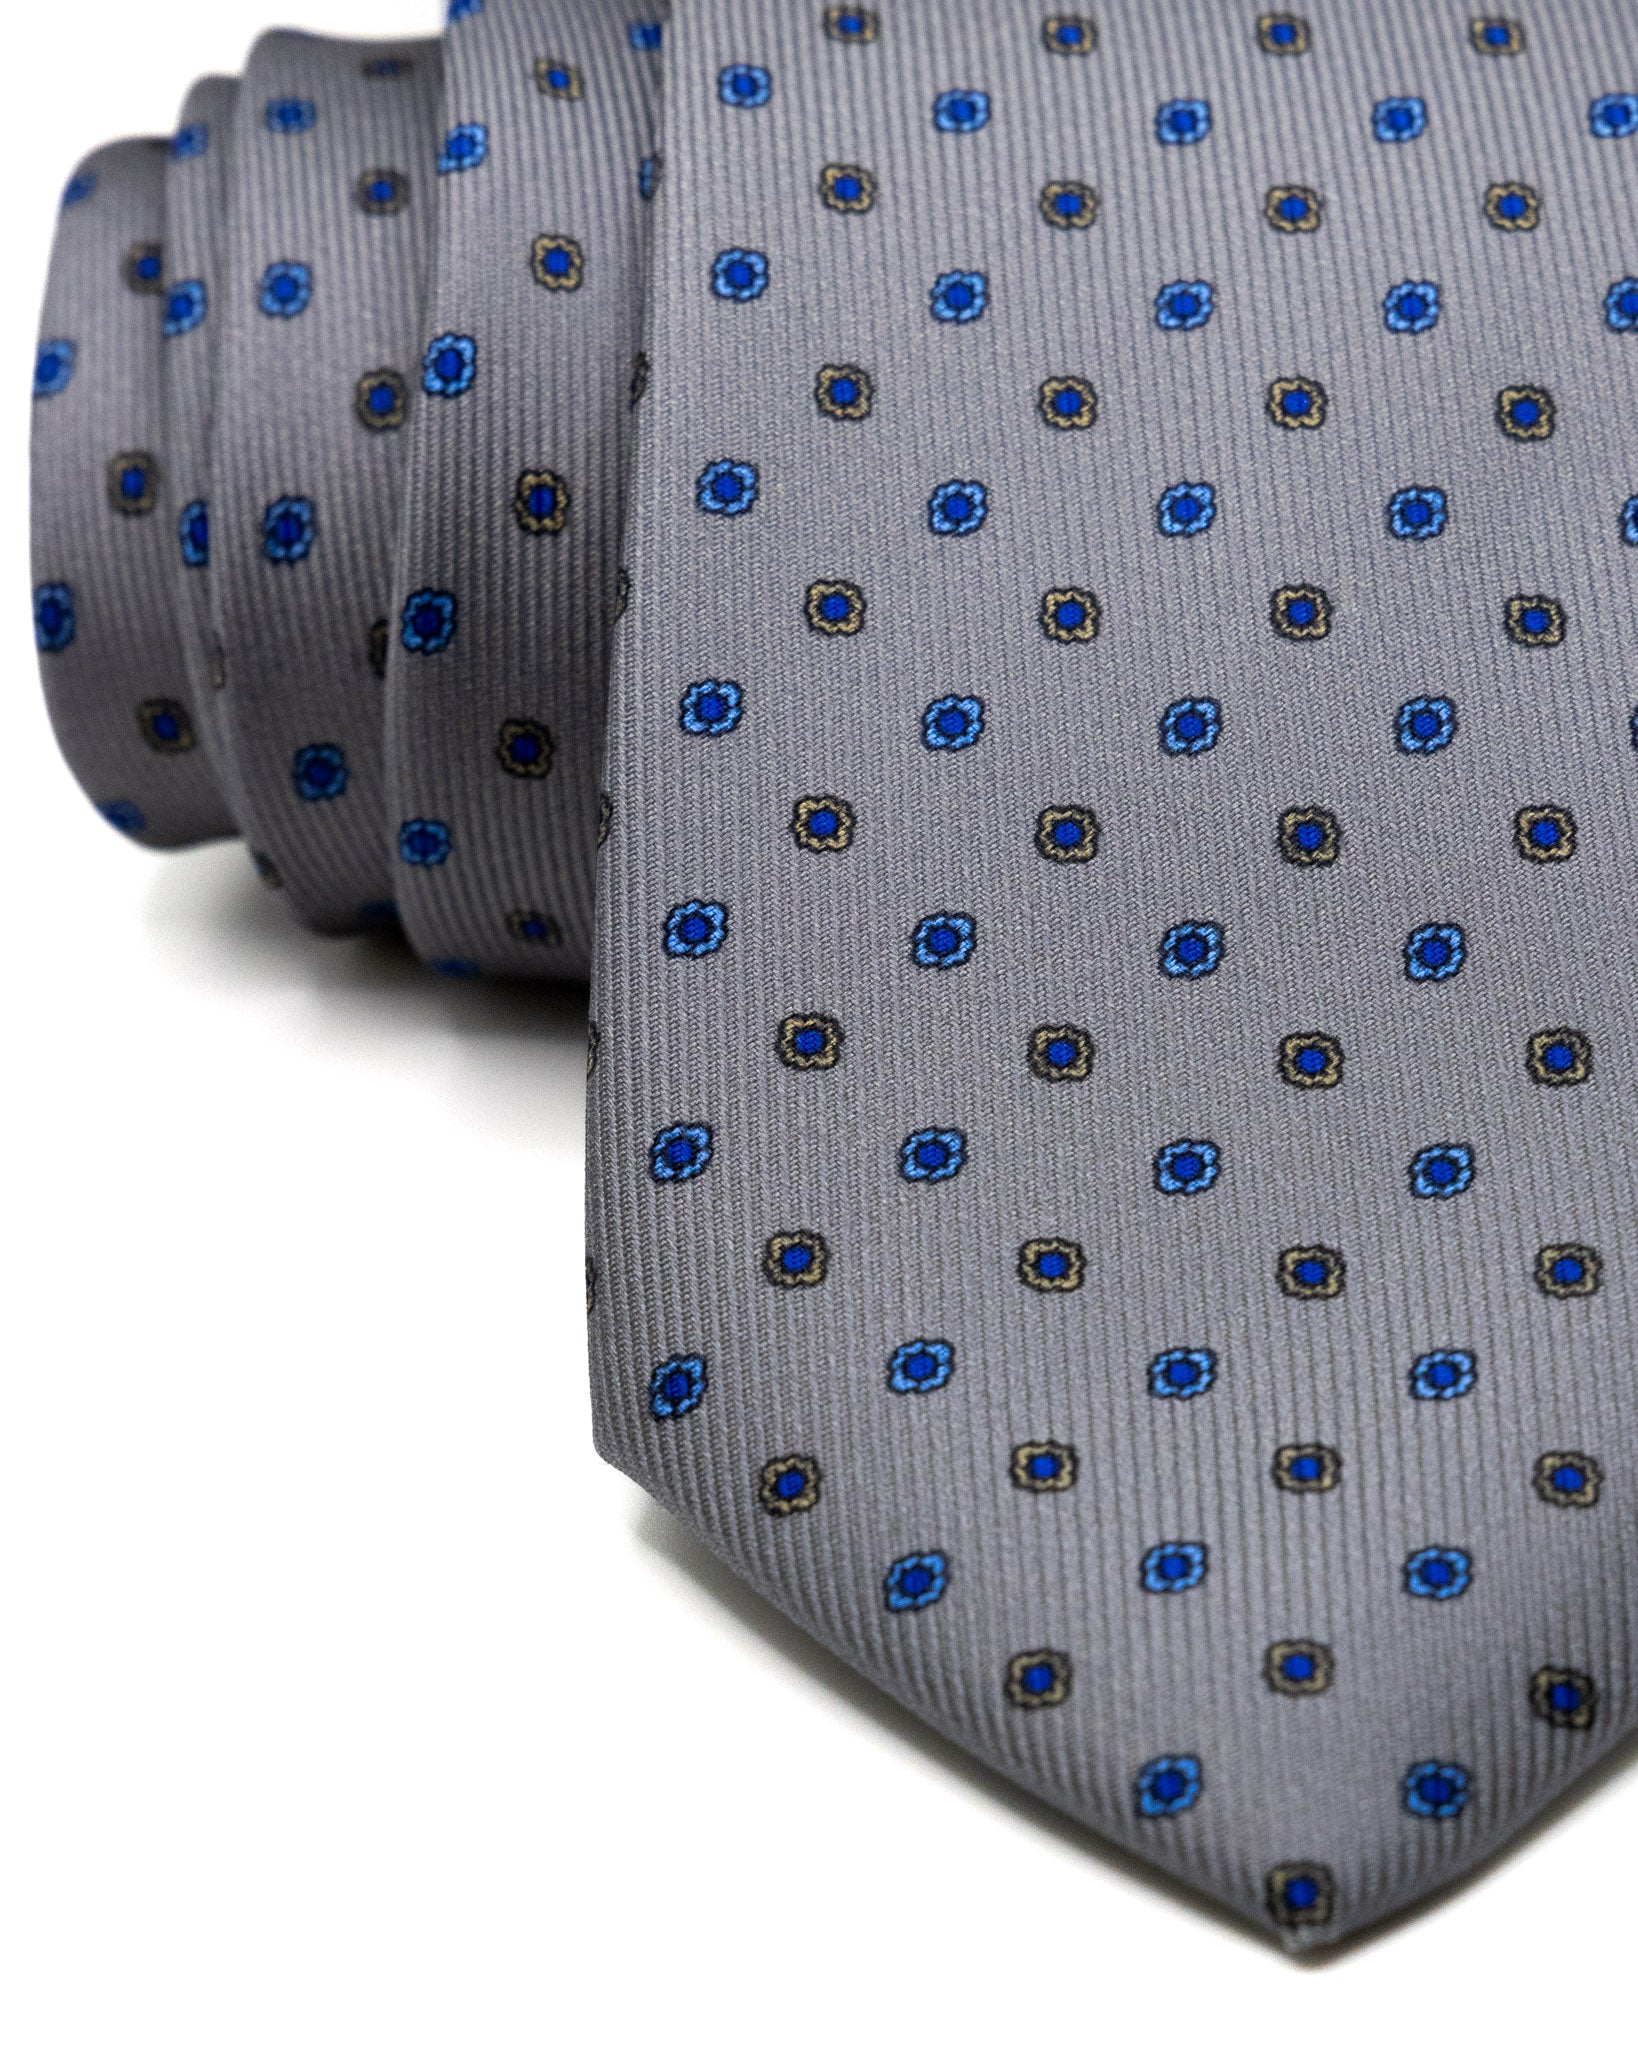 Cravatta - in seta twill antracite a fantasia blu